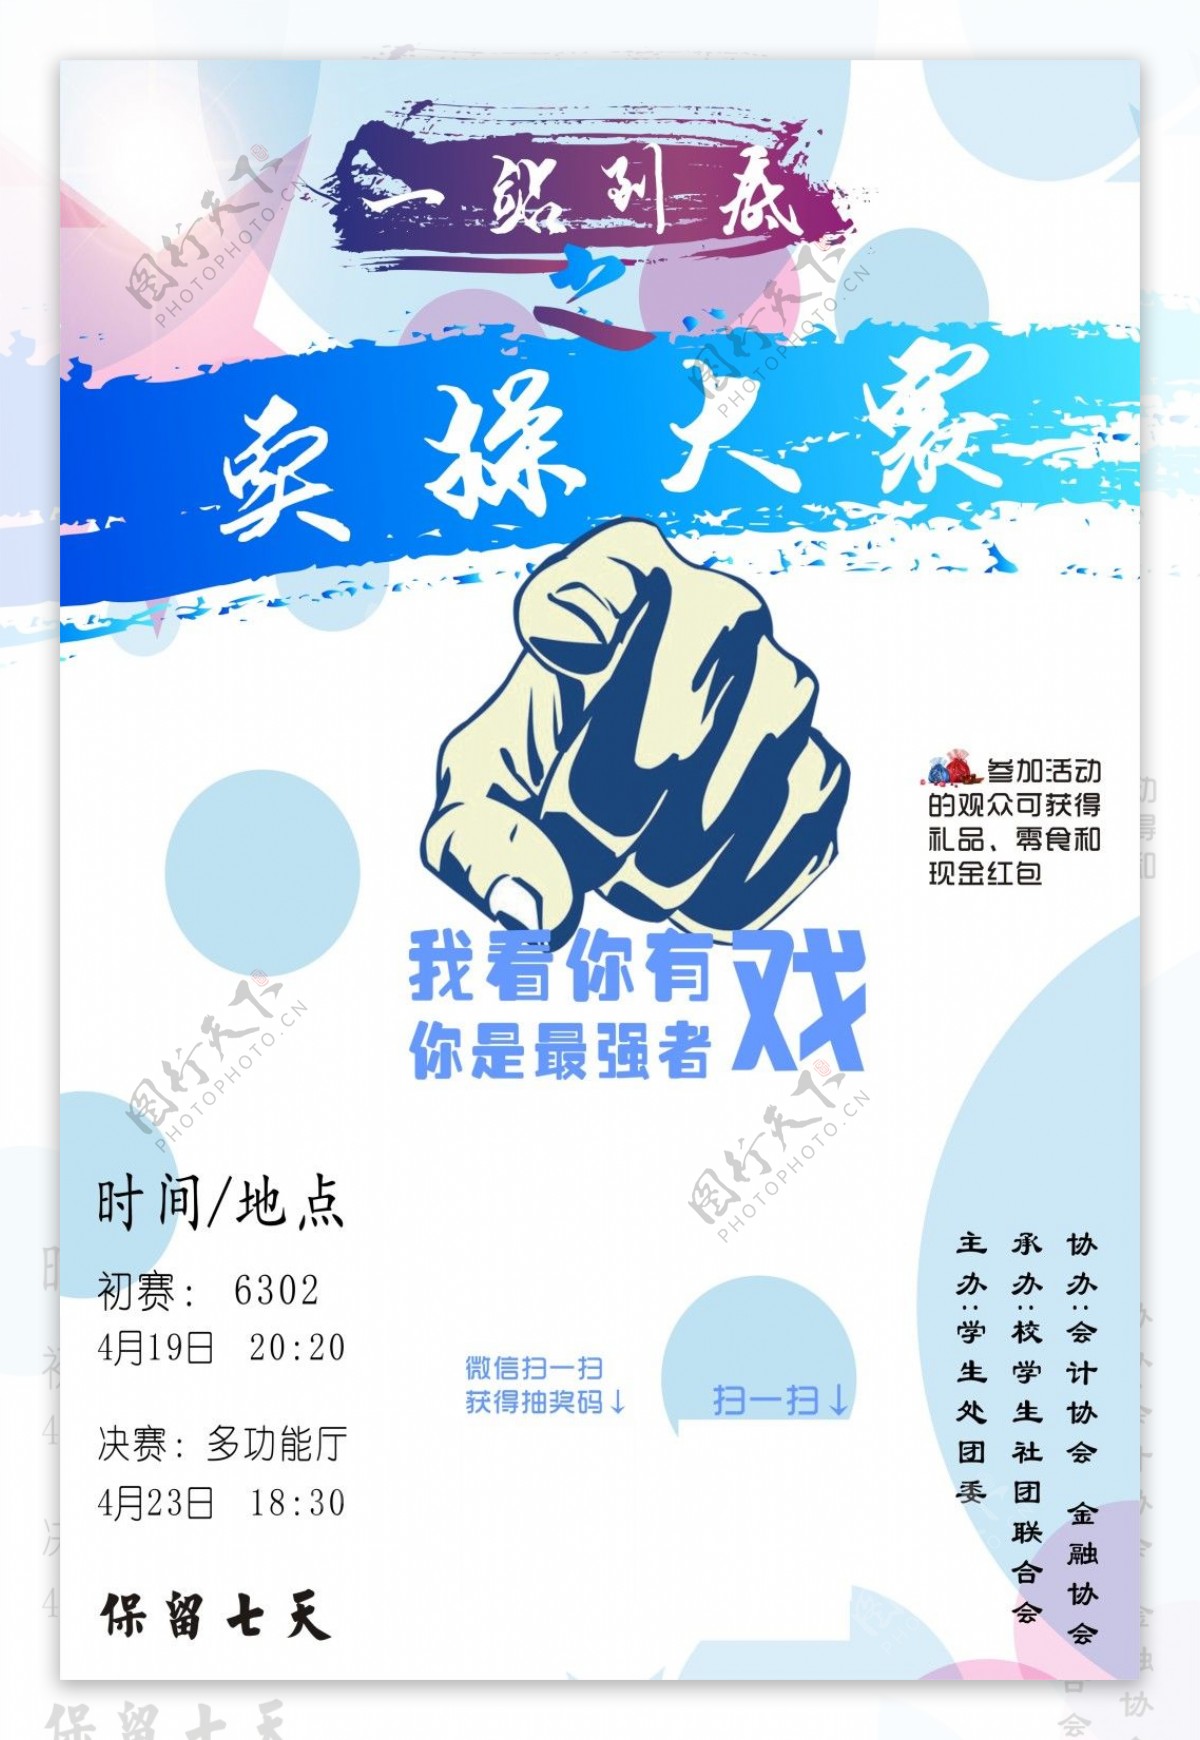 浙江工贸技术学院海报